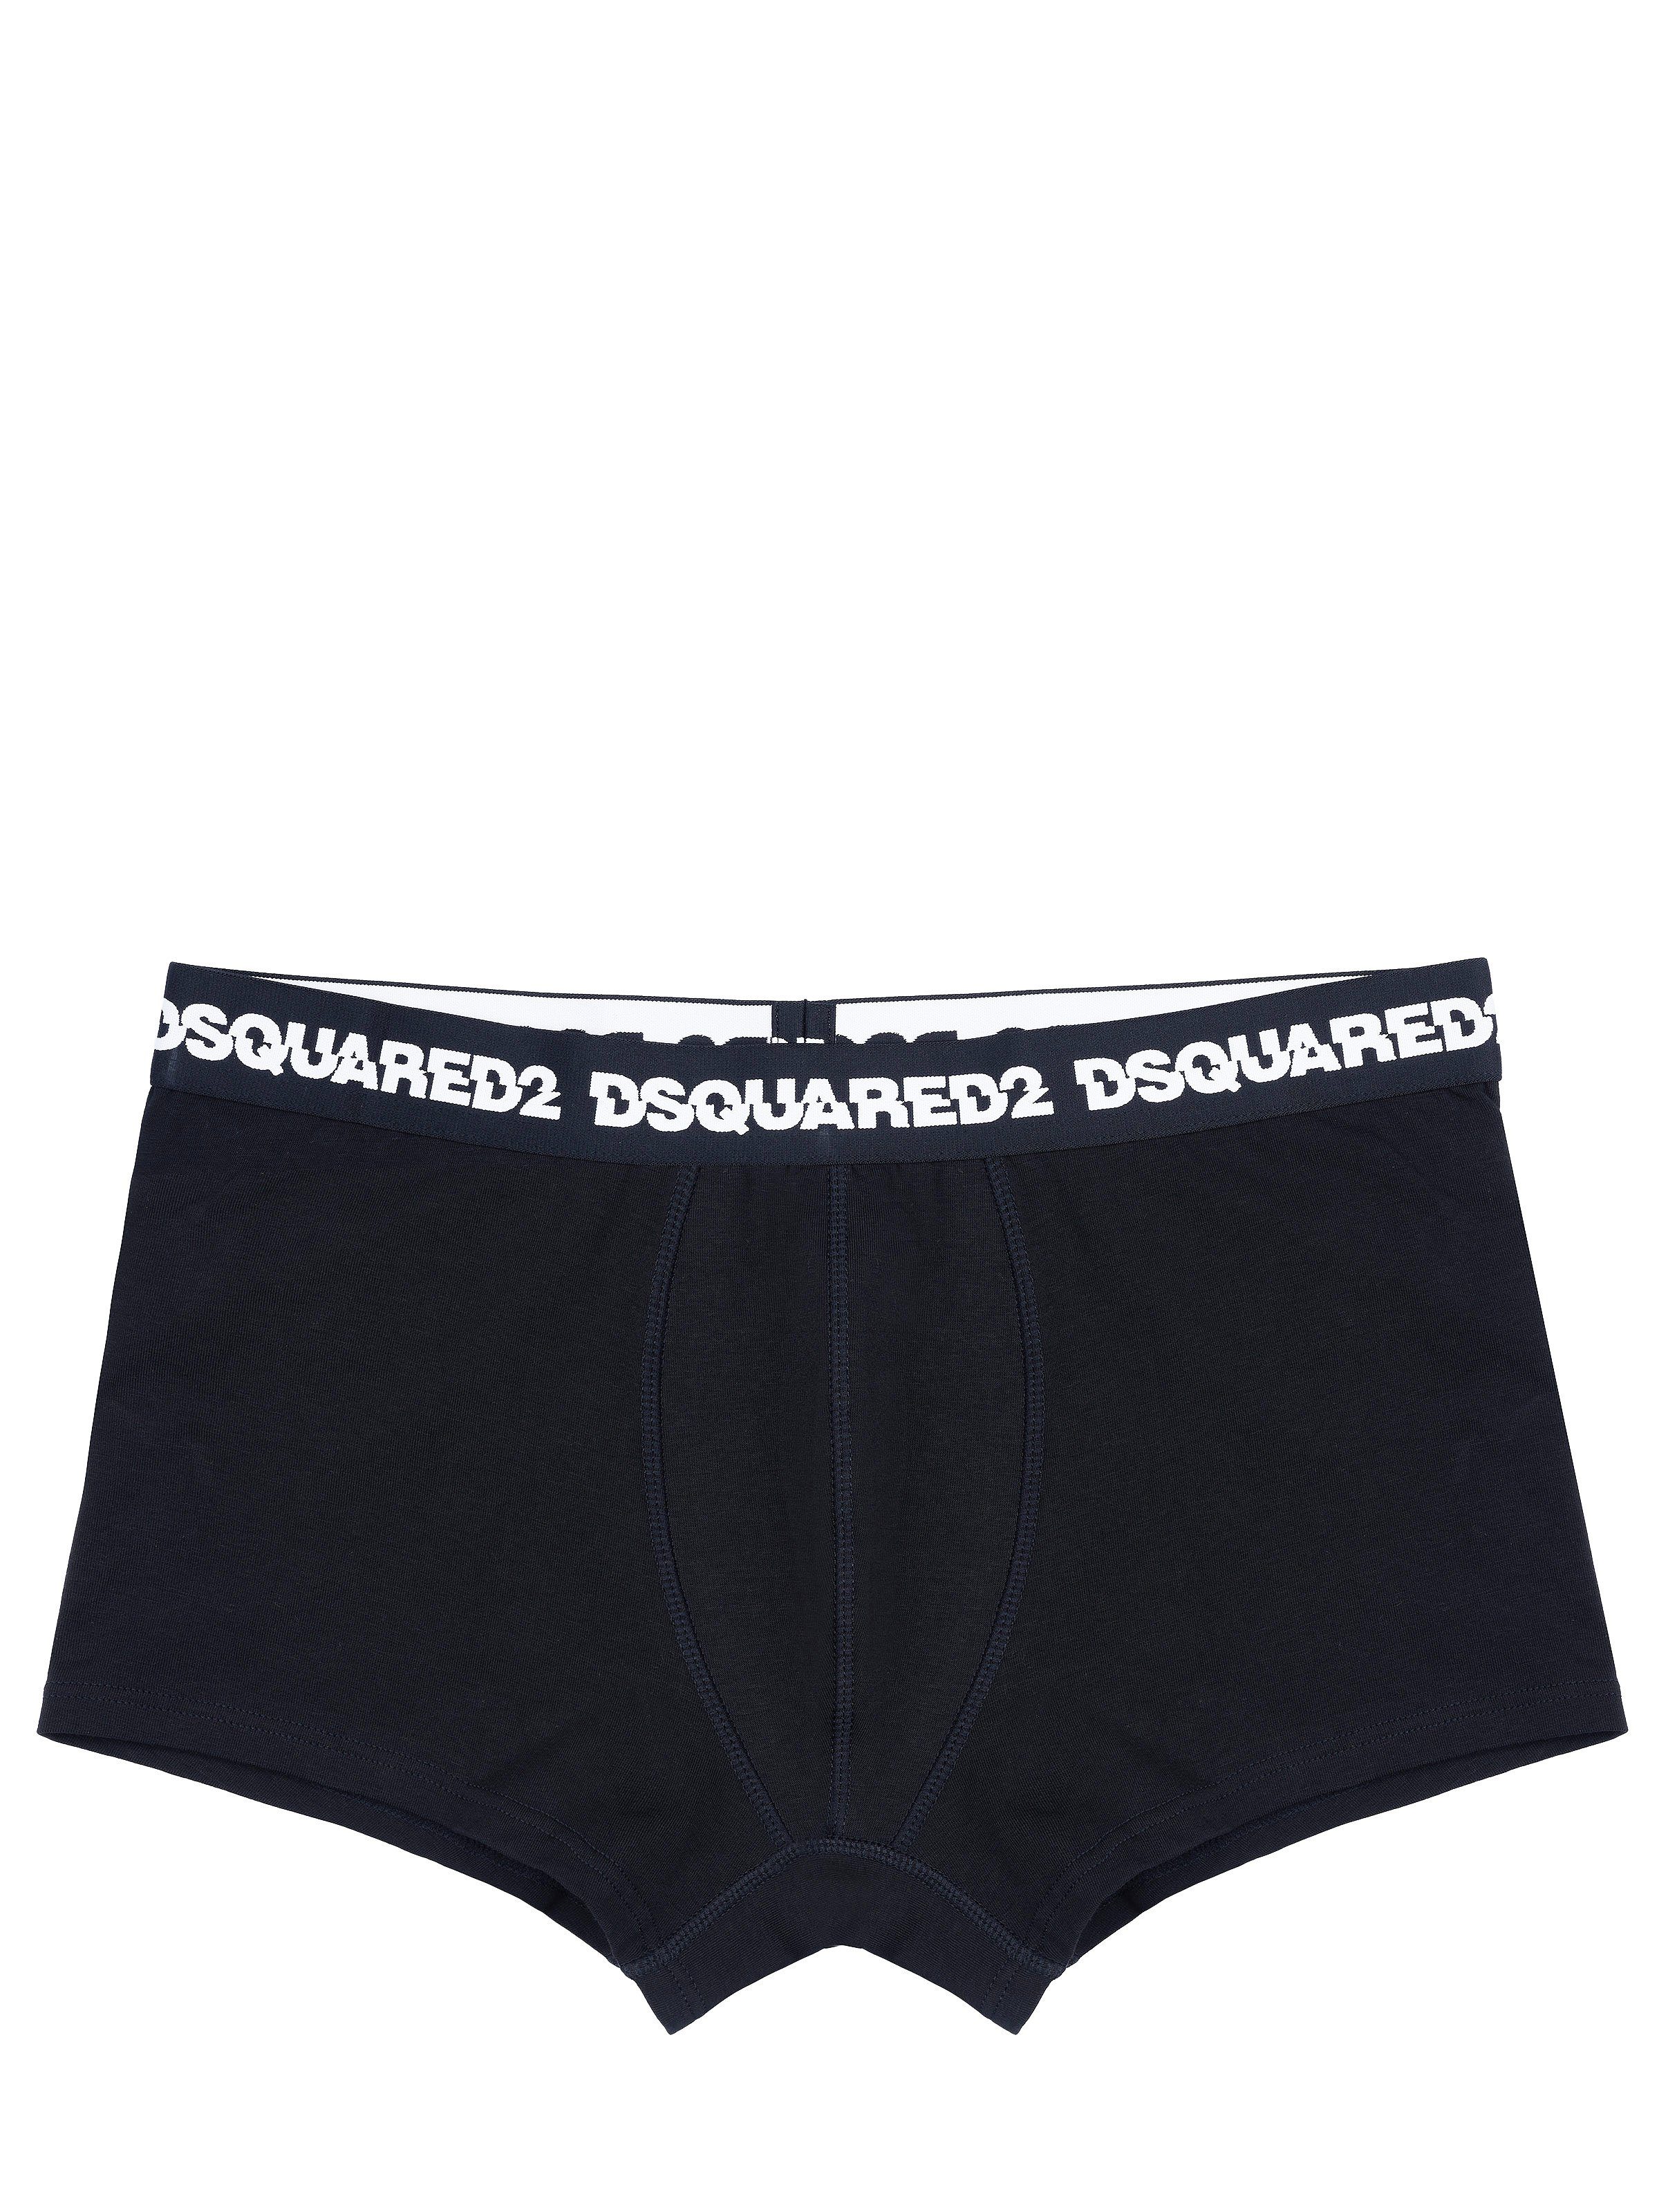 Dsquared2 Боксерские мужские трусы, боксерки Dsquared2 Underwear schwarz